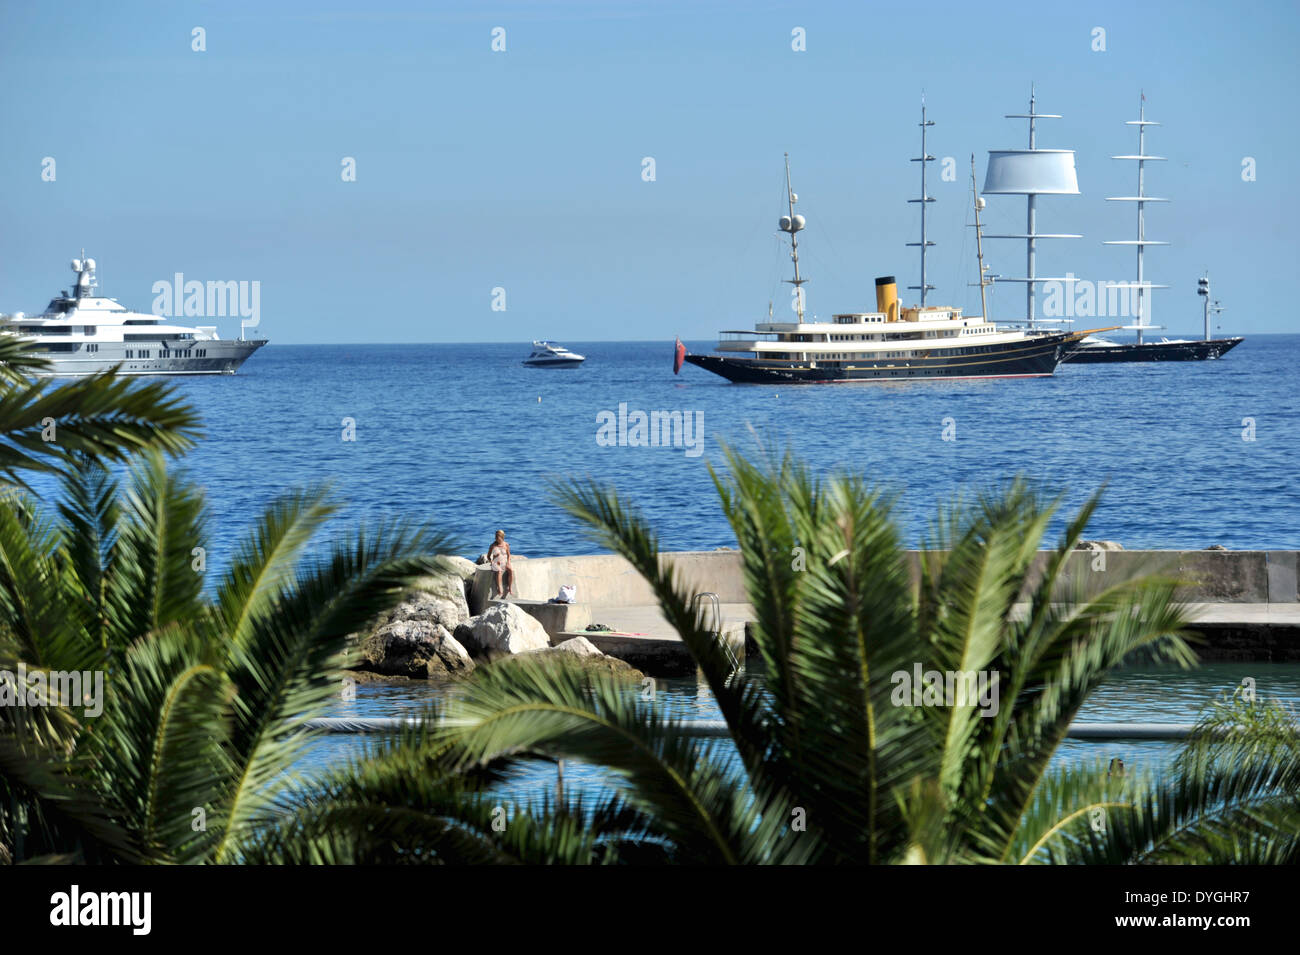 Palmiers bordent la rive de Monaco, des yachts de luxe sont ancrées à proximité. Banque D'Images